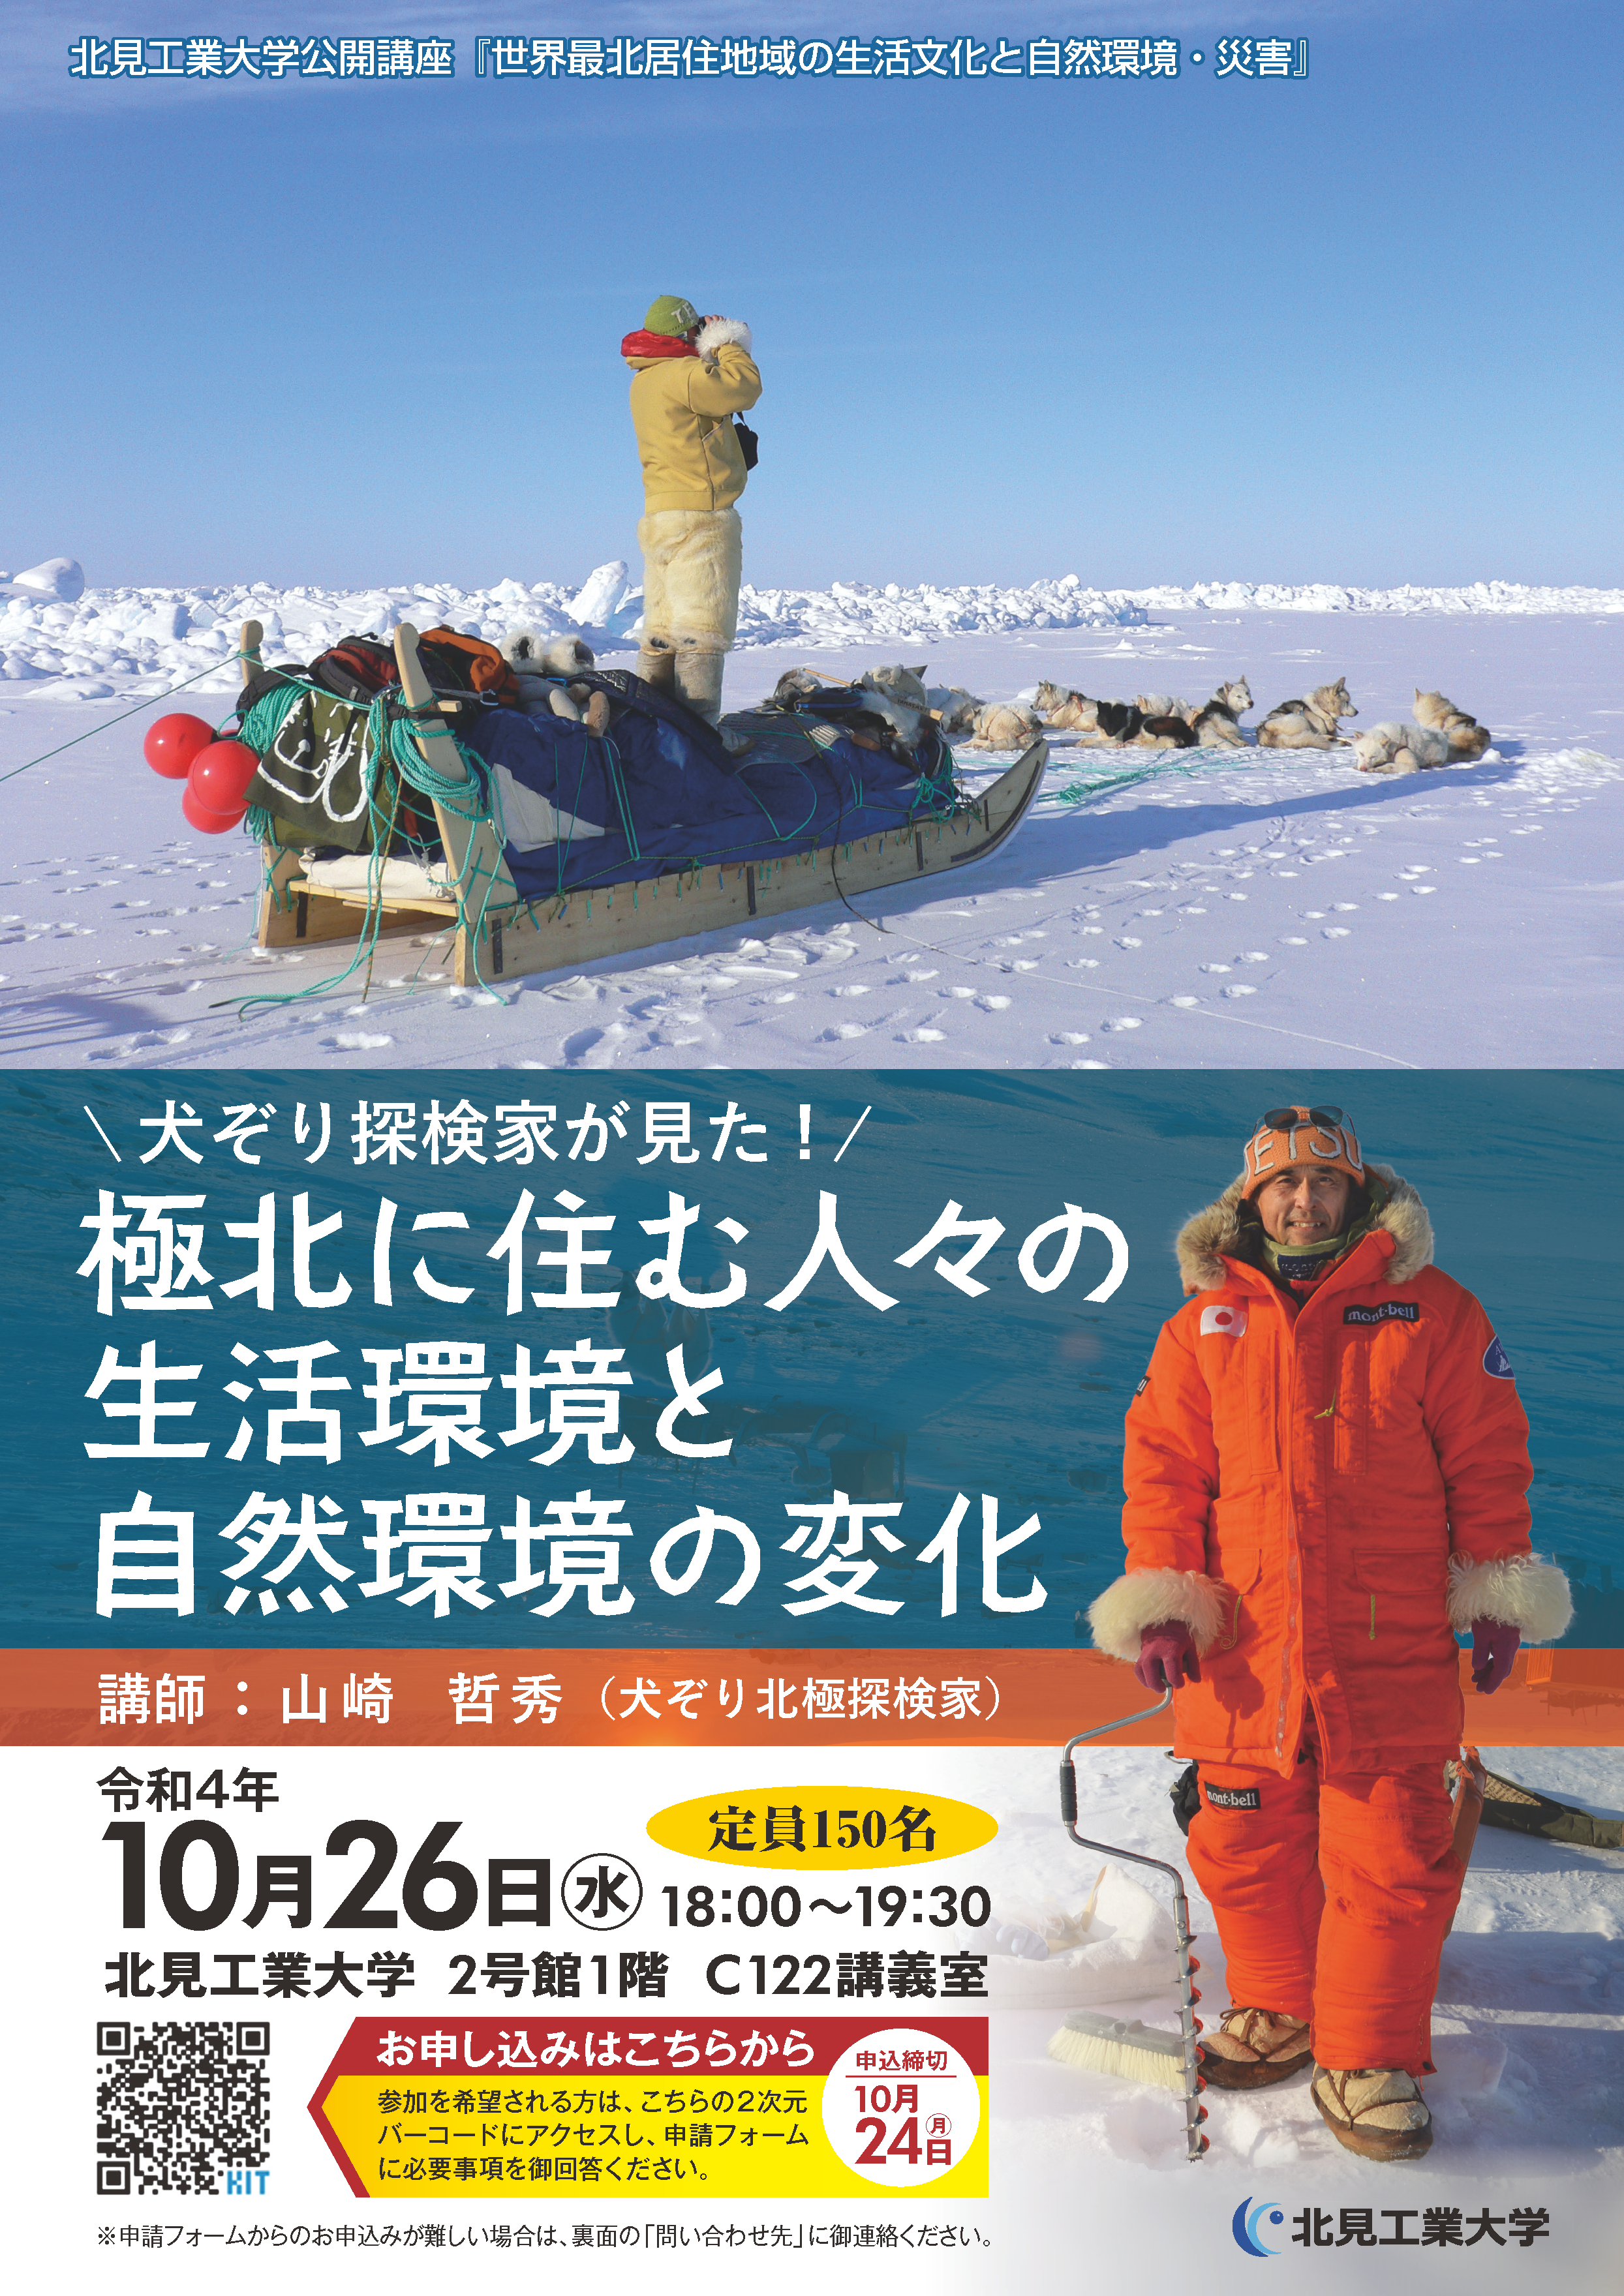 第4回公開講座 犬ぞり北極探検家 山崎哲秀氏の講演会を開催します 北見工業大学